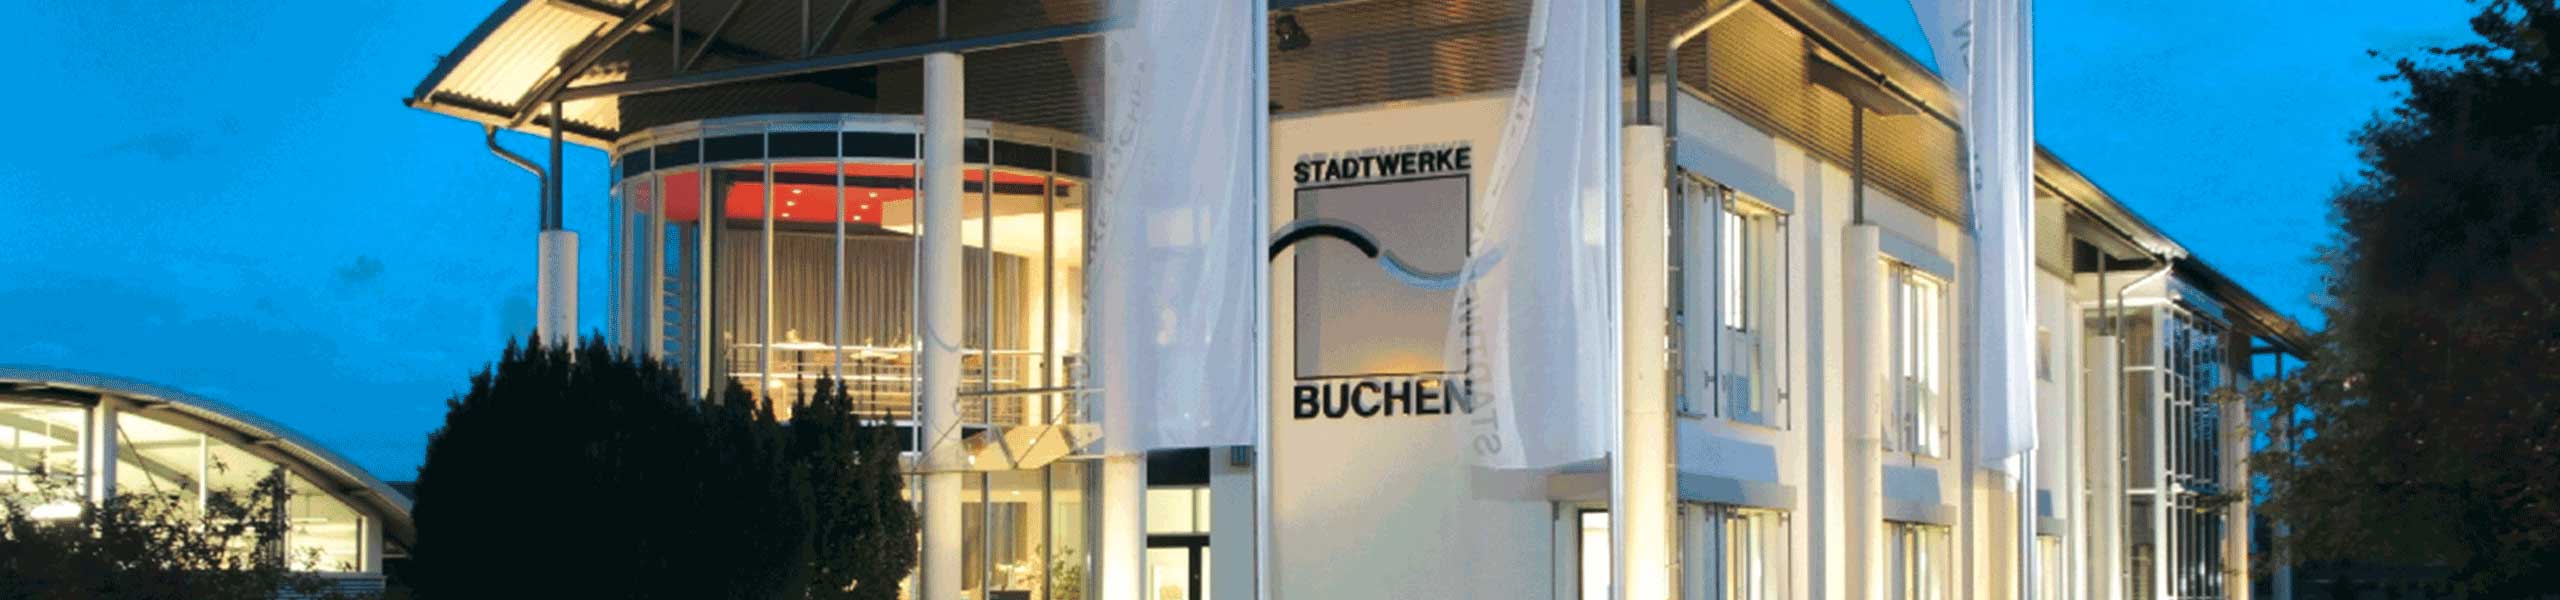 Stadtwerke Buchen GmbH & Co KG - SWBiogas10 + PV 